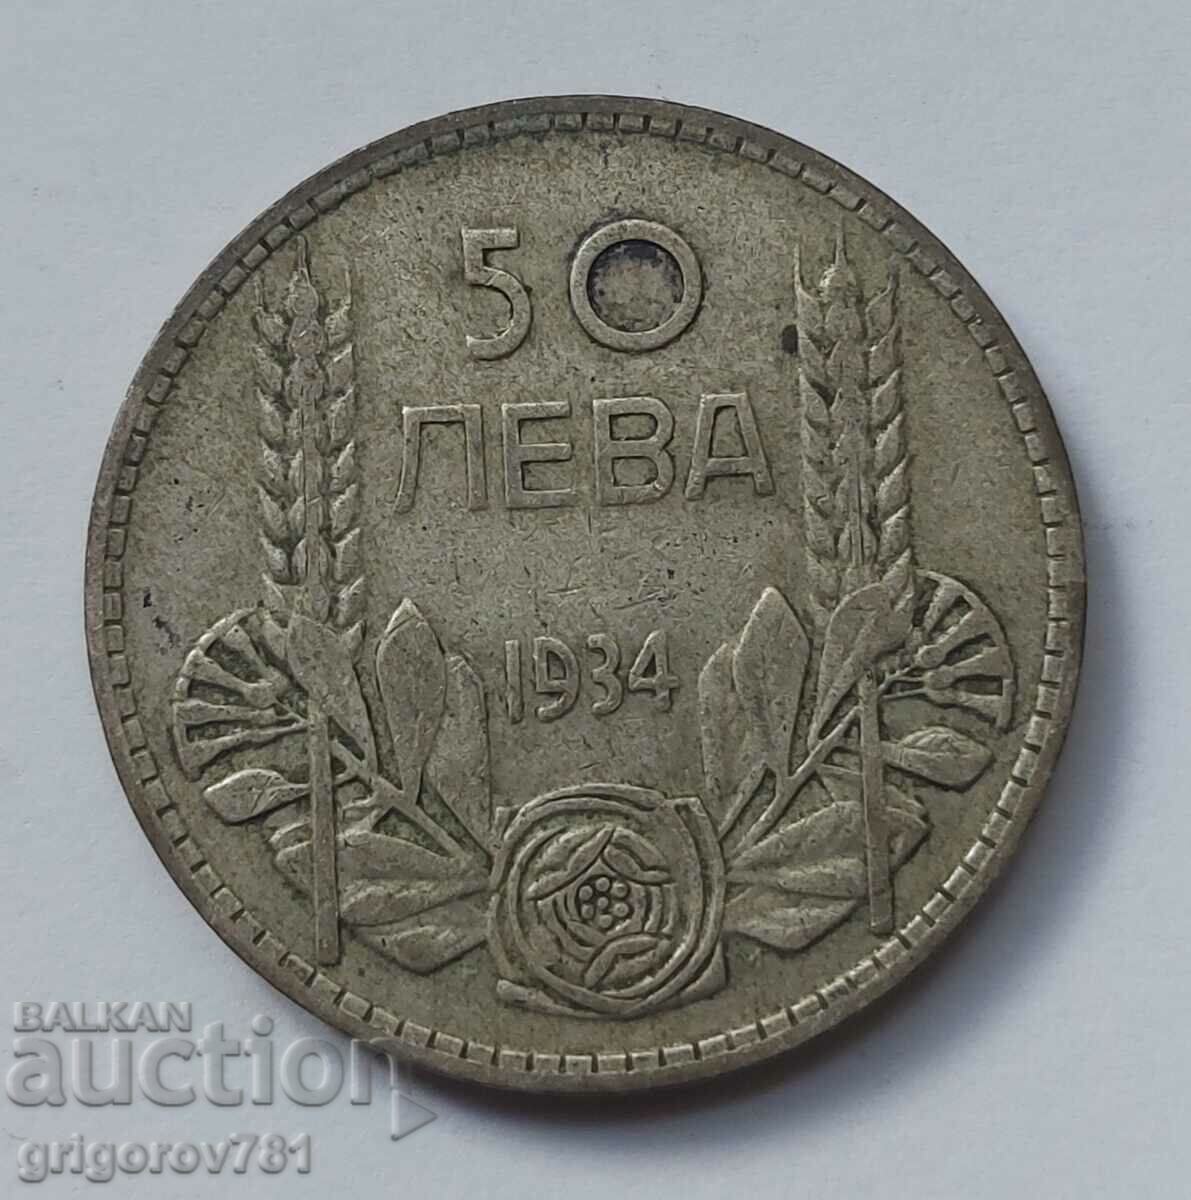 Ασήμι 50 λέβα Βουλγαρία 1934 - ασημένιο νόμισμα #3